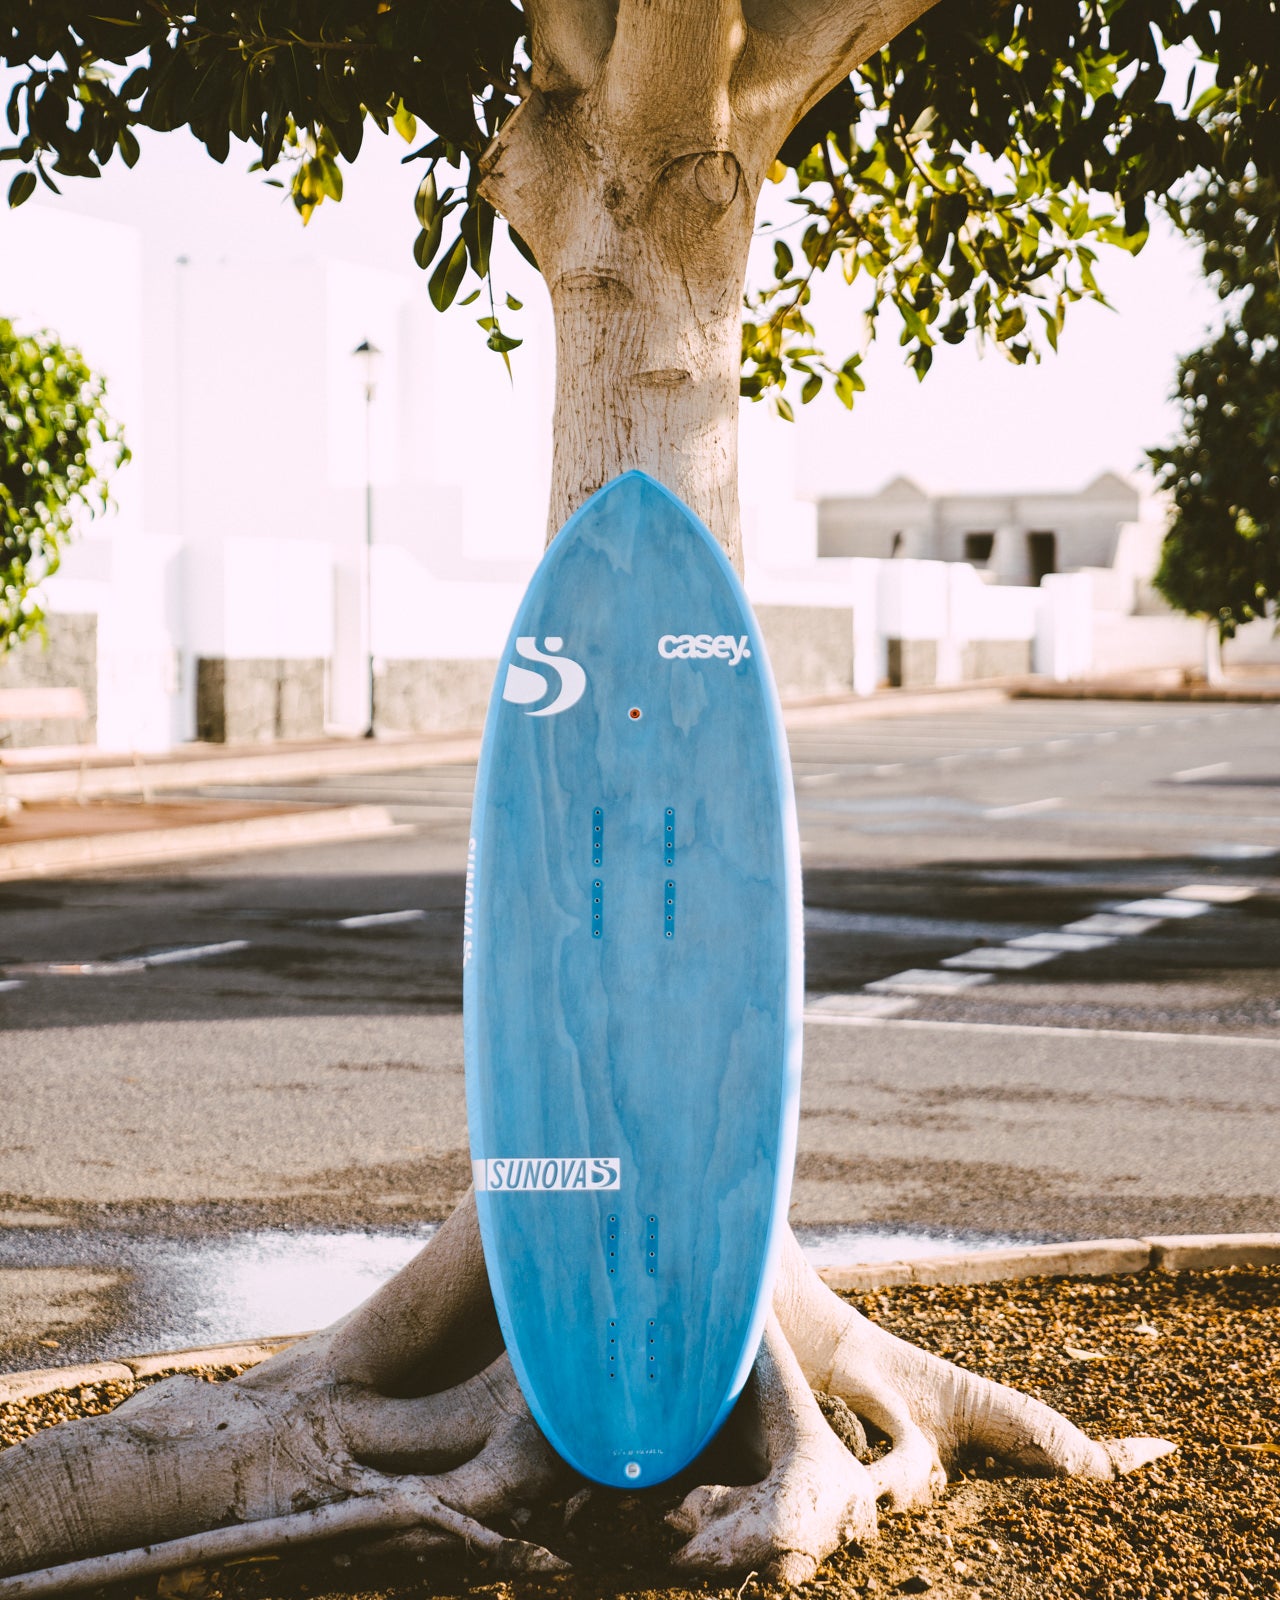 Sunova Casey Pilot Surf Pronefoil Board an einen Baum angelehnt.